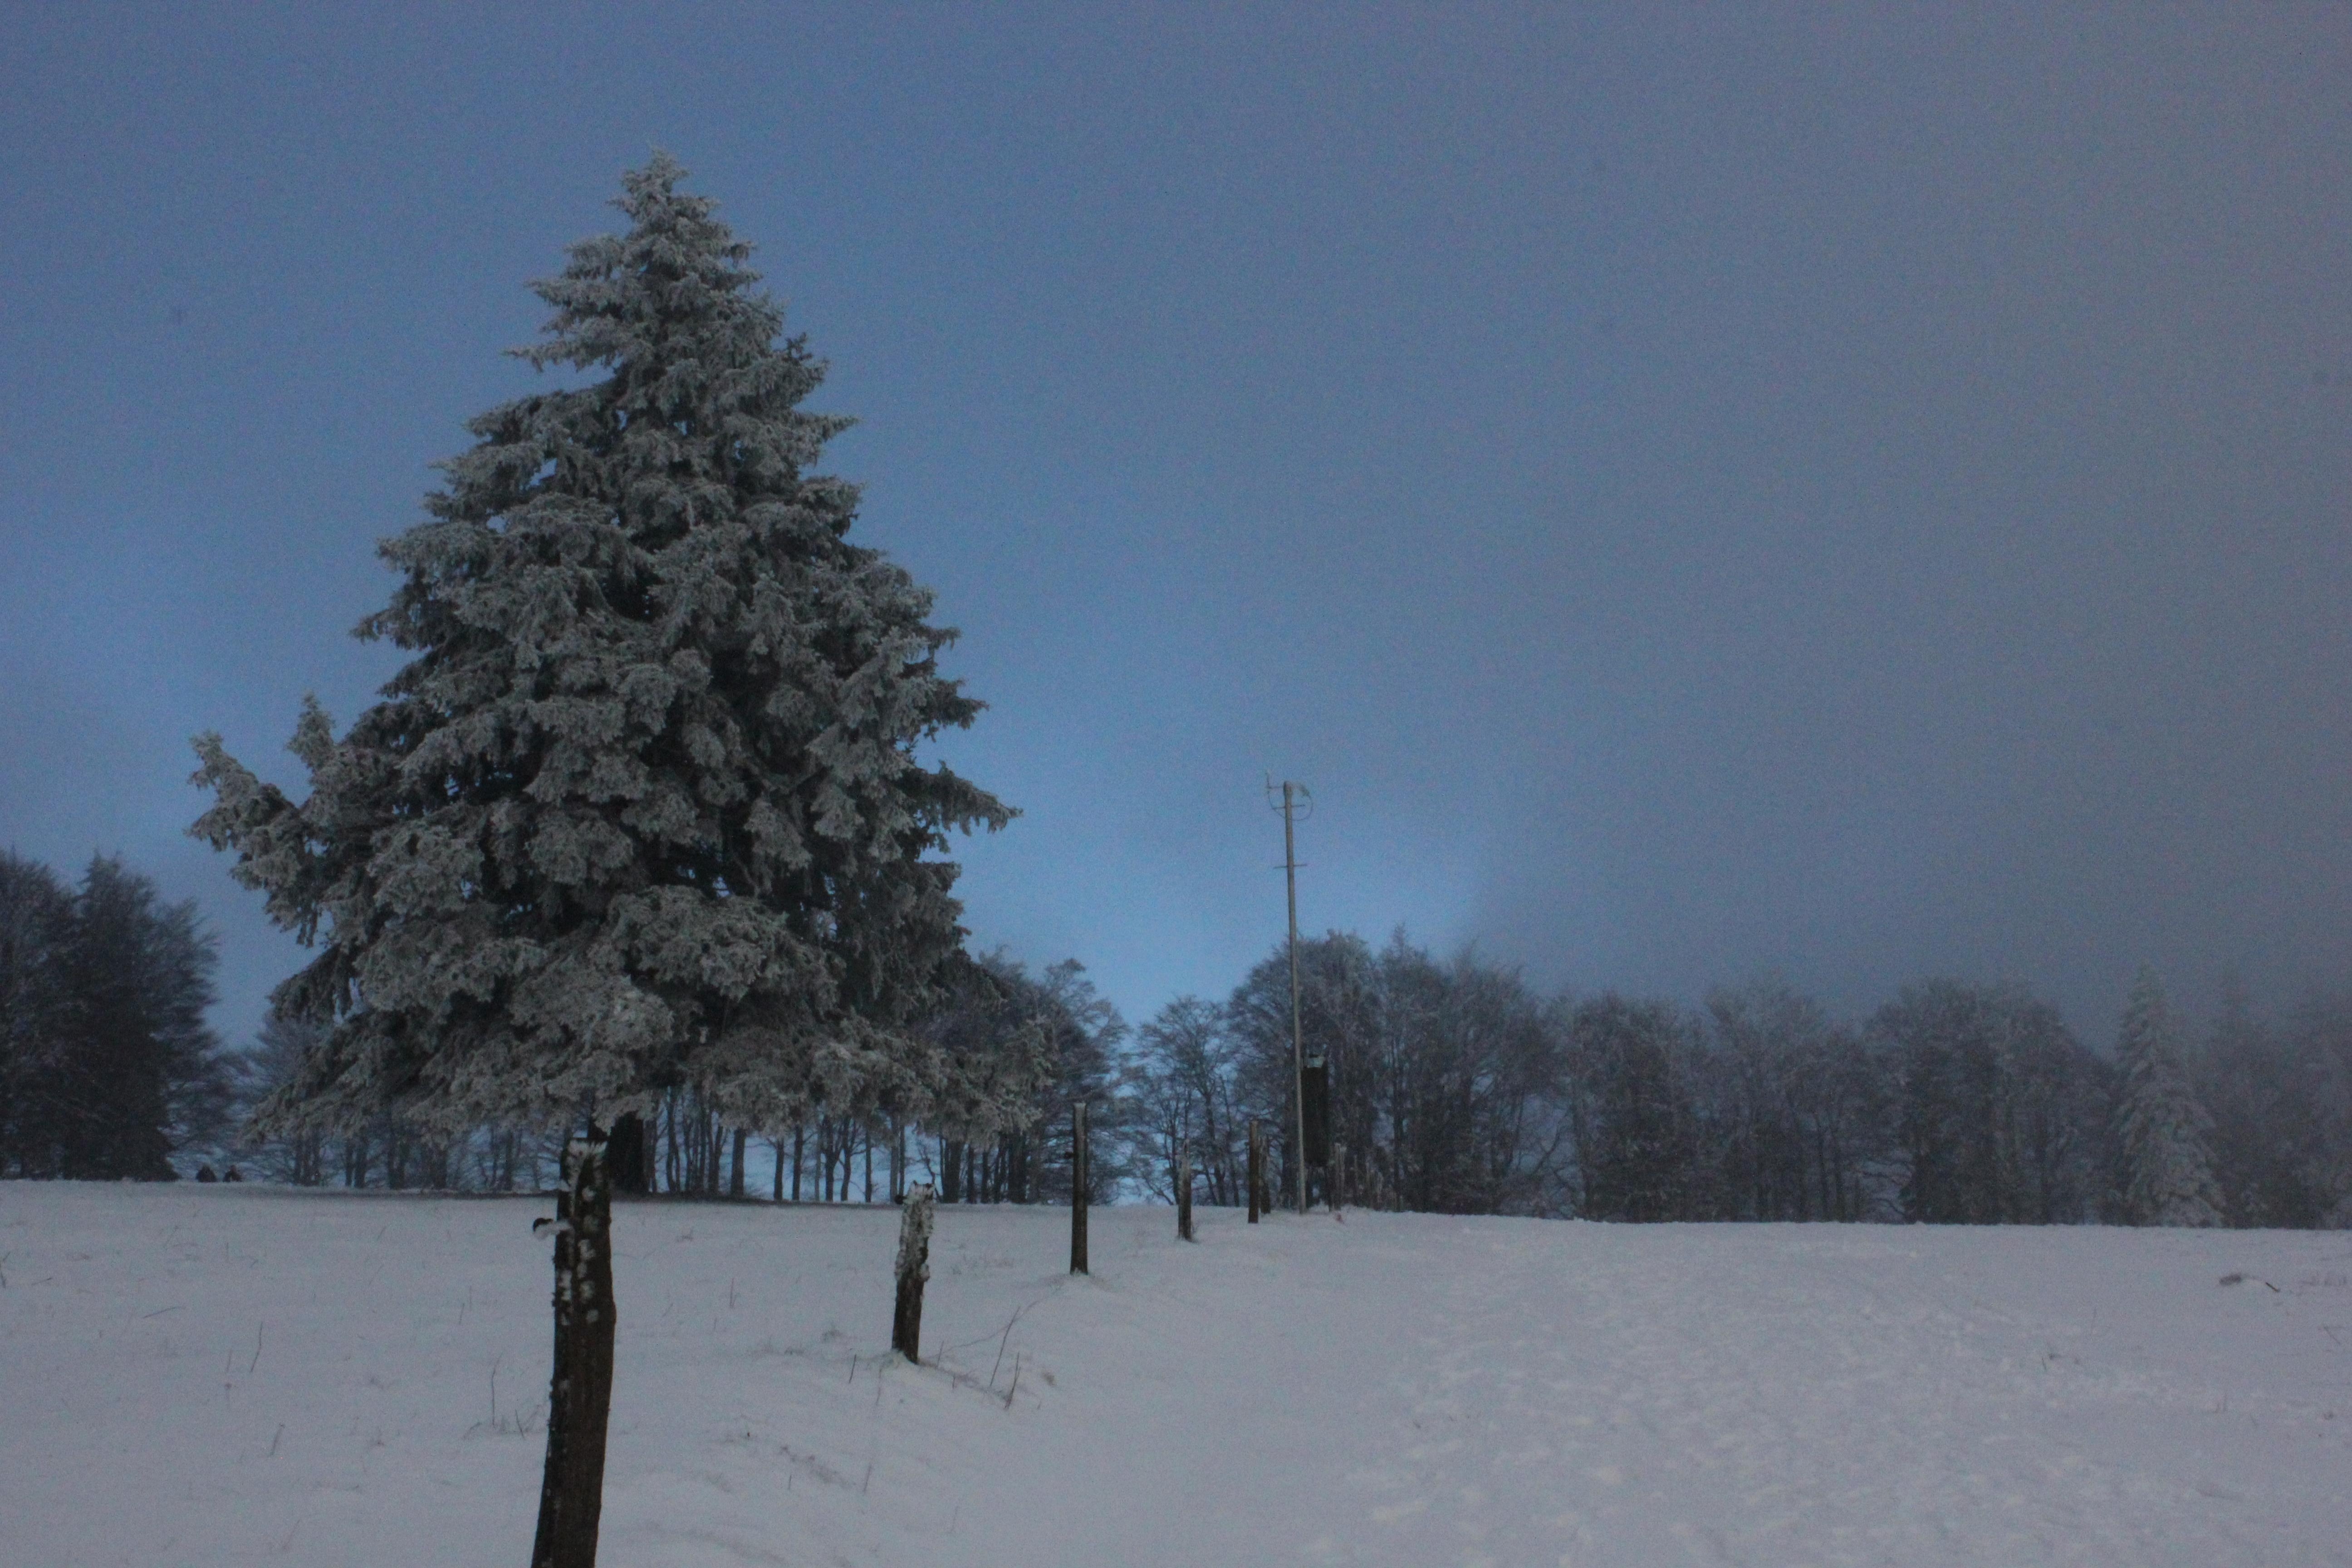 Letzter großer Spaziergang im Schnee für dieses Jahr! #winterwonderland #kandel #freiburg #schnee